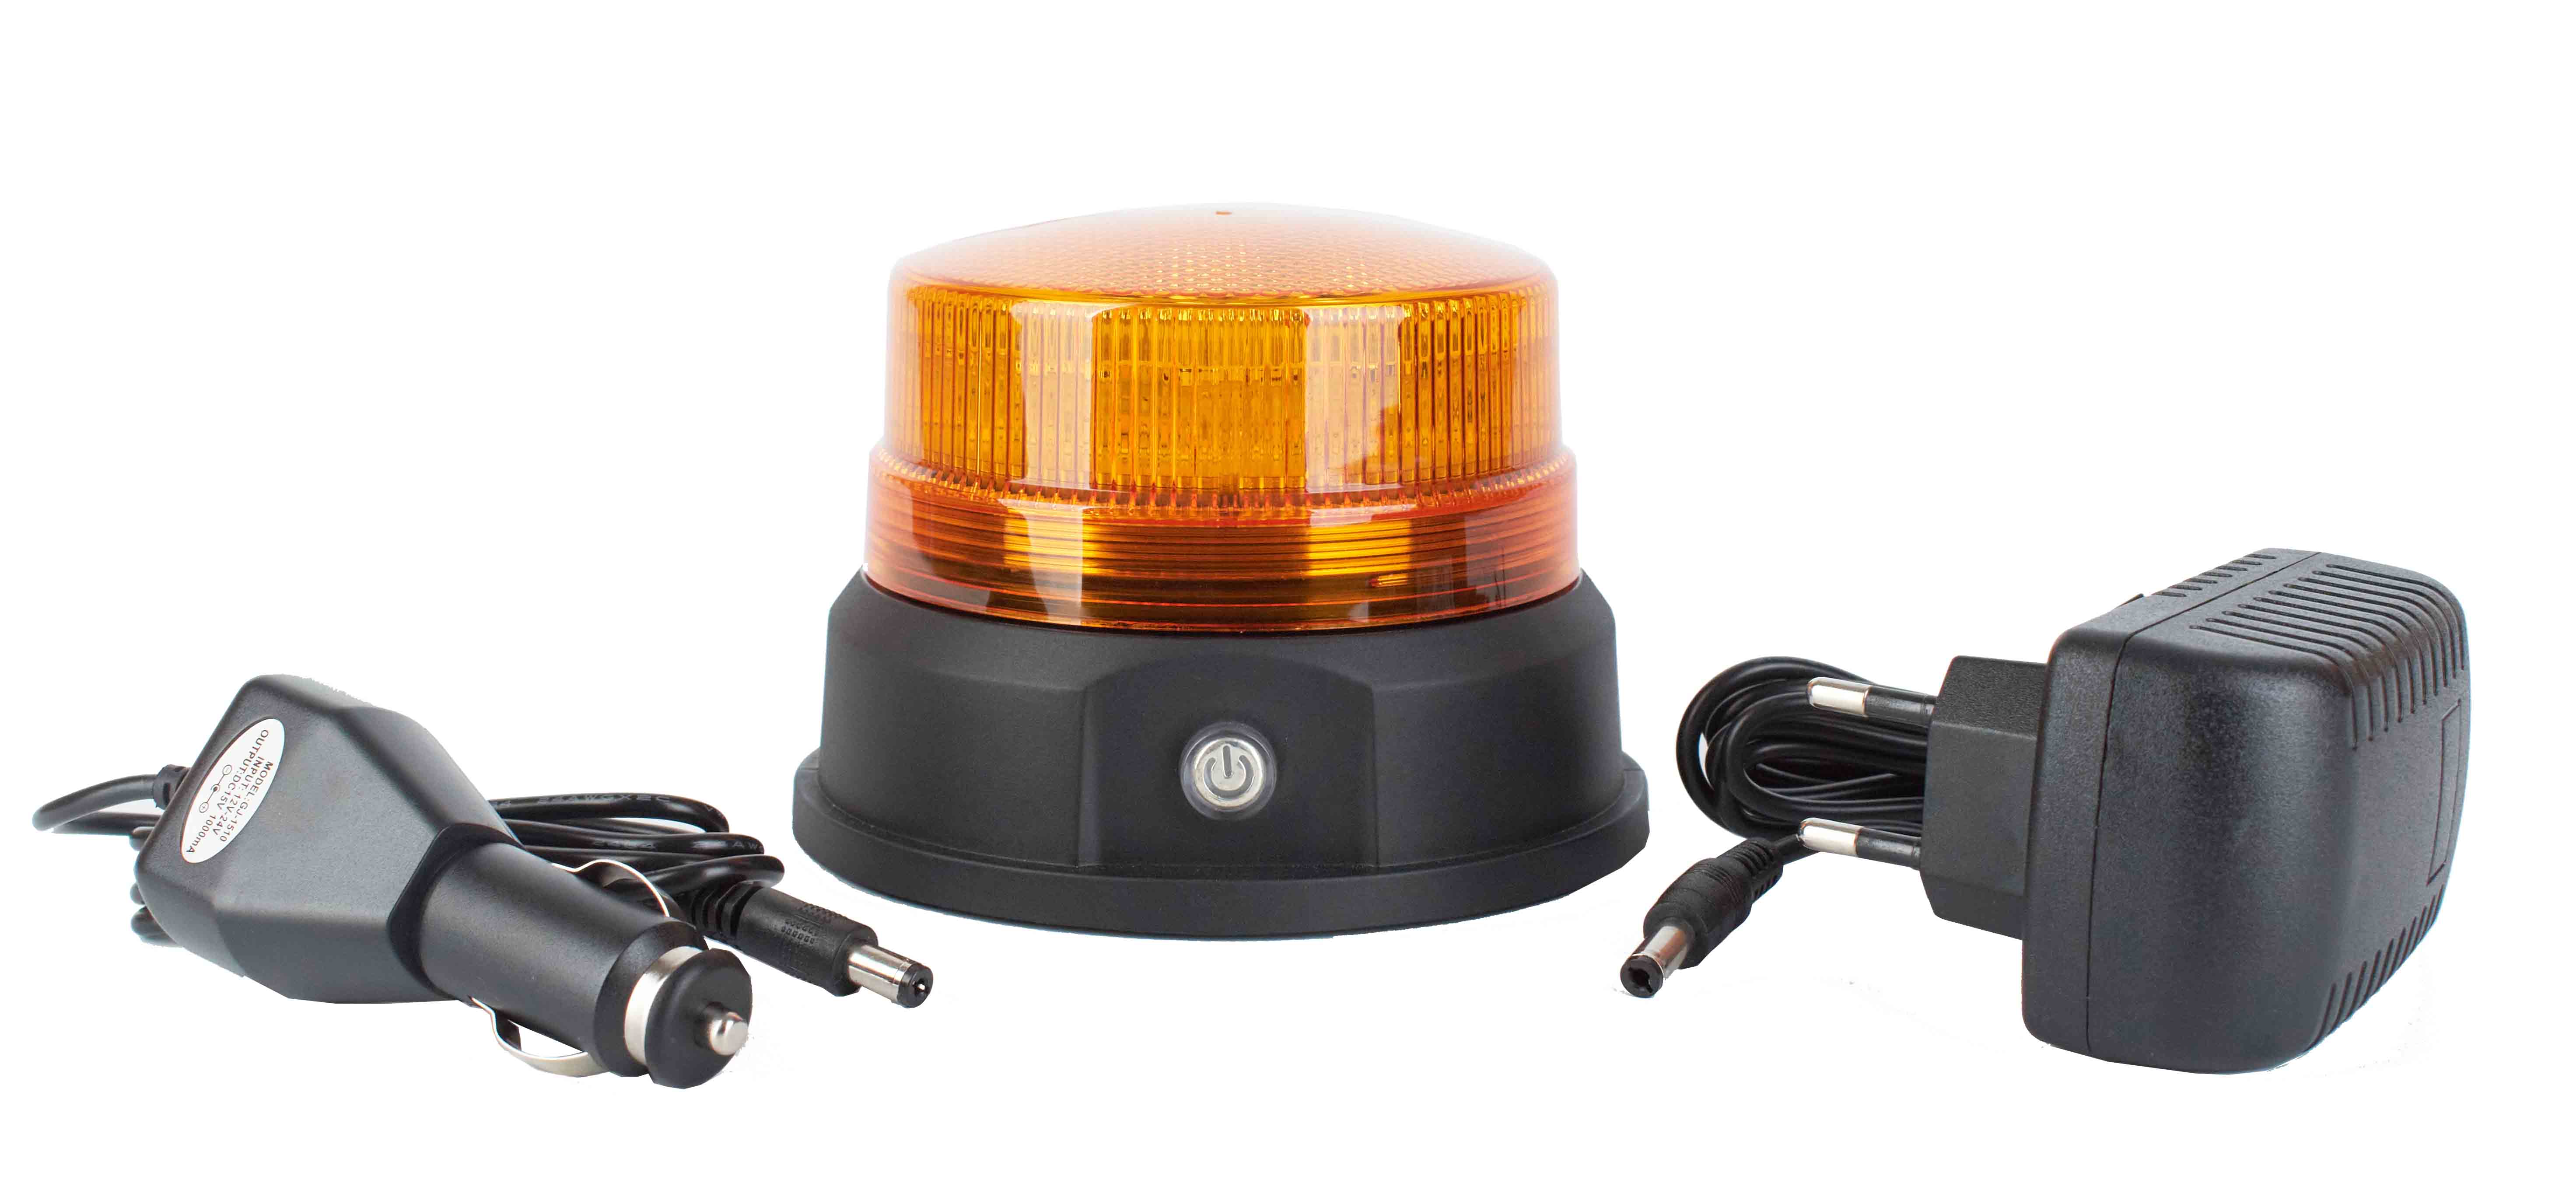 Gyrophare LED Magnétique  Amafibre : Fournisseur Matériel